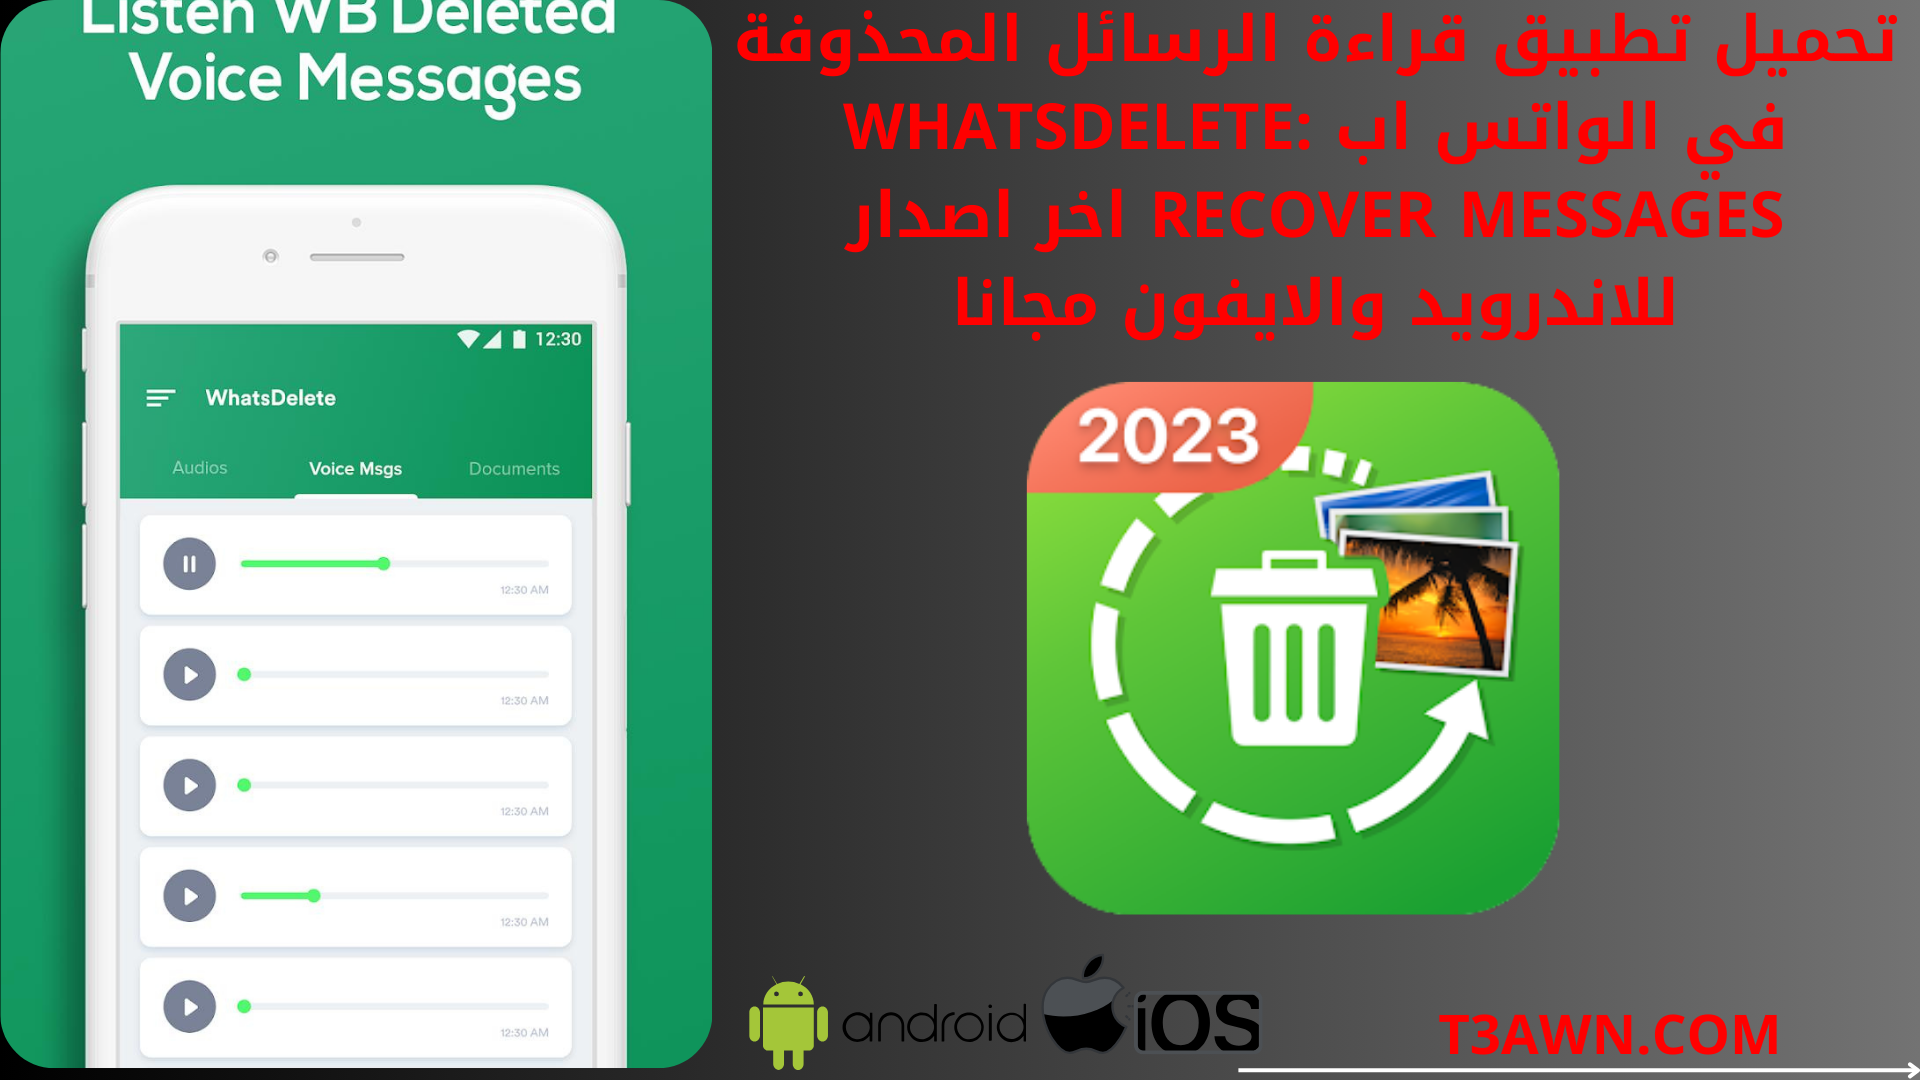 تحميل تطبيق قراءة الرسائل المحذوفة في الواتساب WhatsDelete: Recover Messages اخر اصدار للاندرويد والايفون مجانا